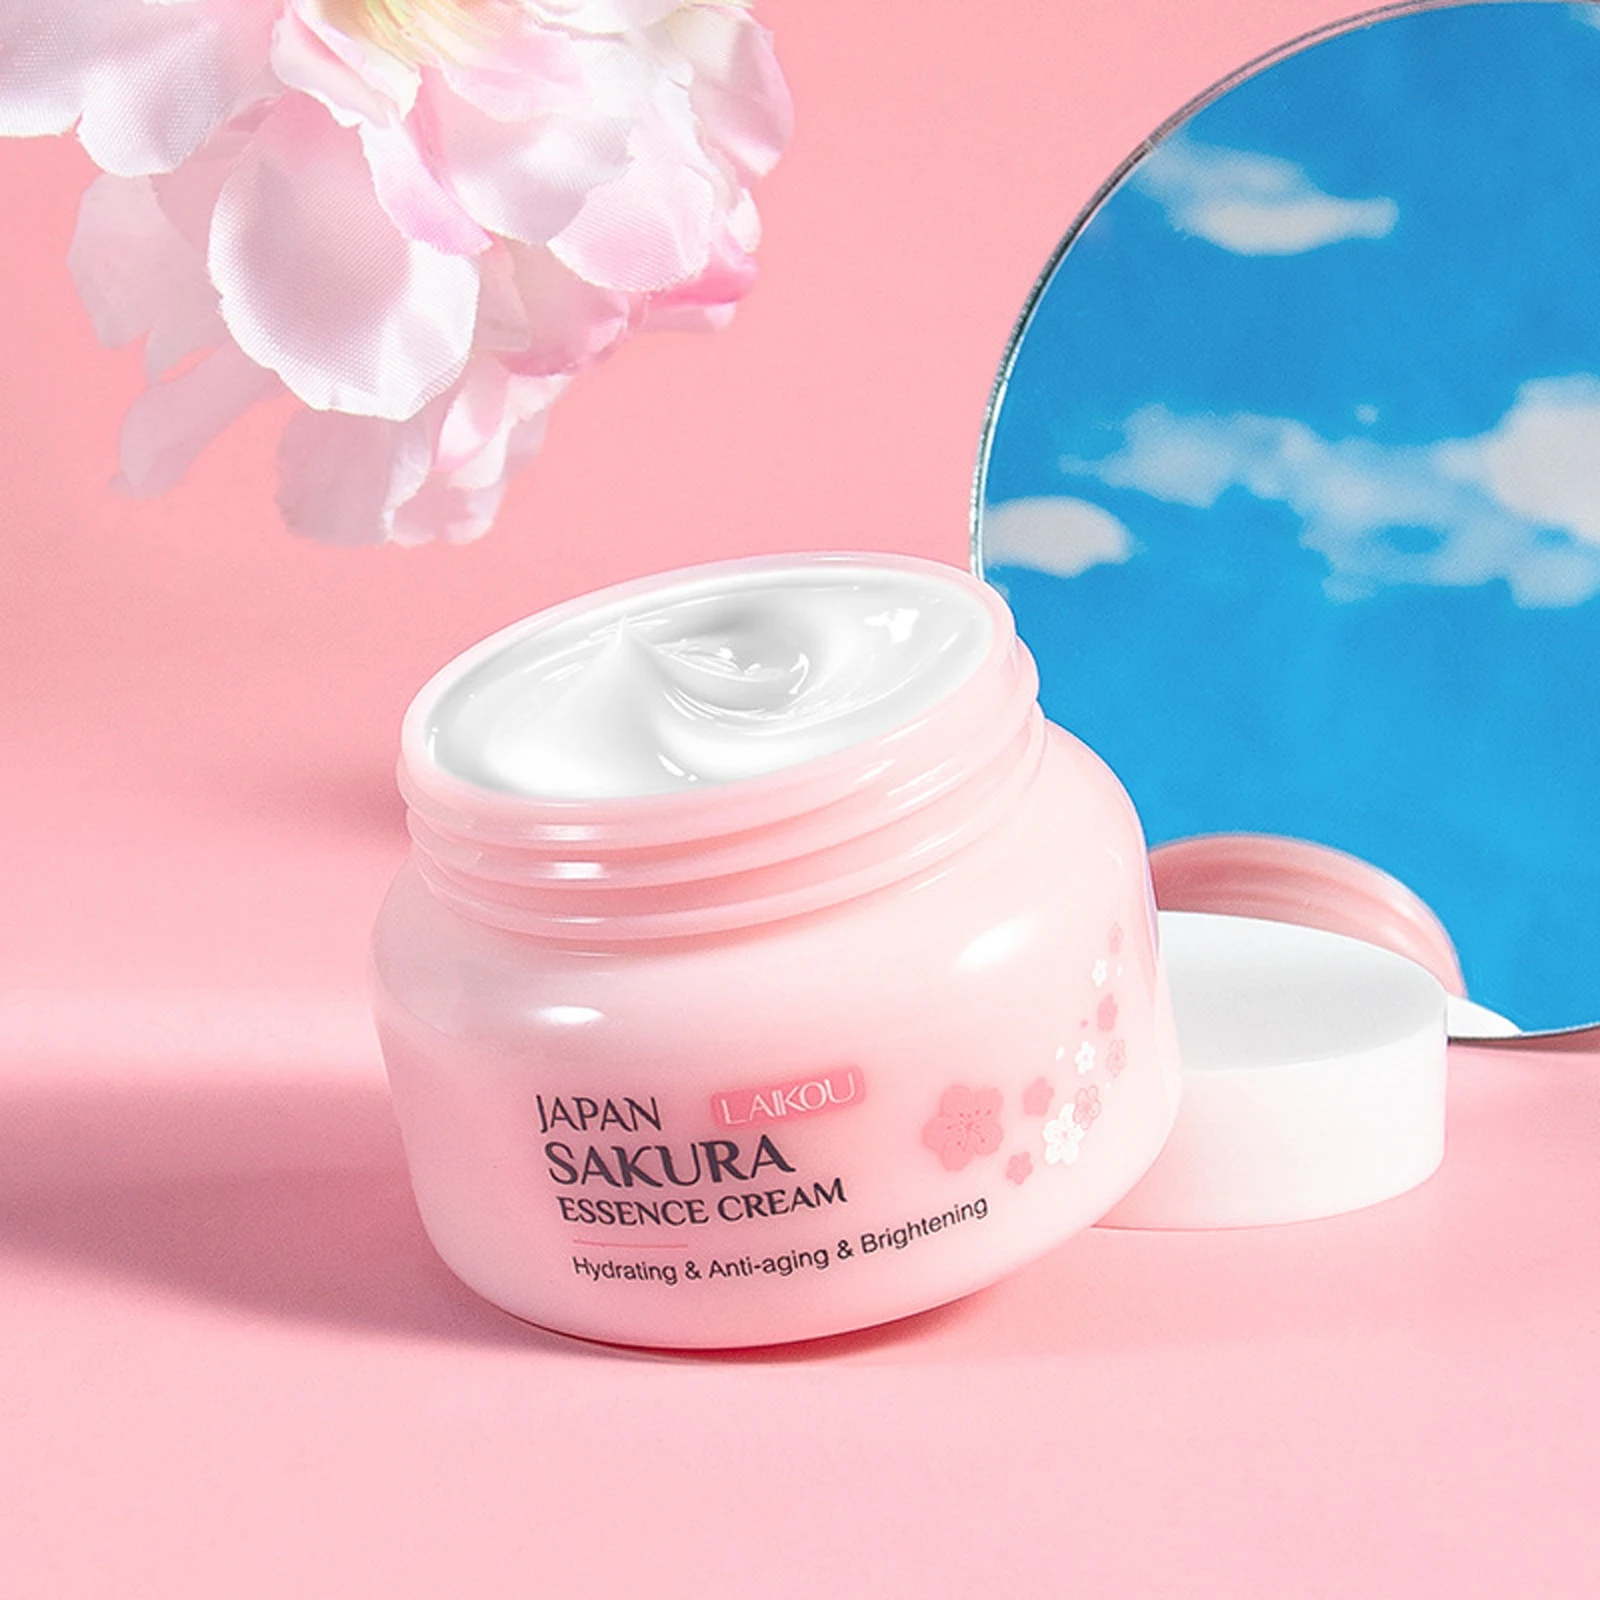 LAIKOU Sakura Essence Face Cream Whitening Brightening Moisturizing Firming Repairing Anti Wrinkle Oil Pores Skin Care 60g